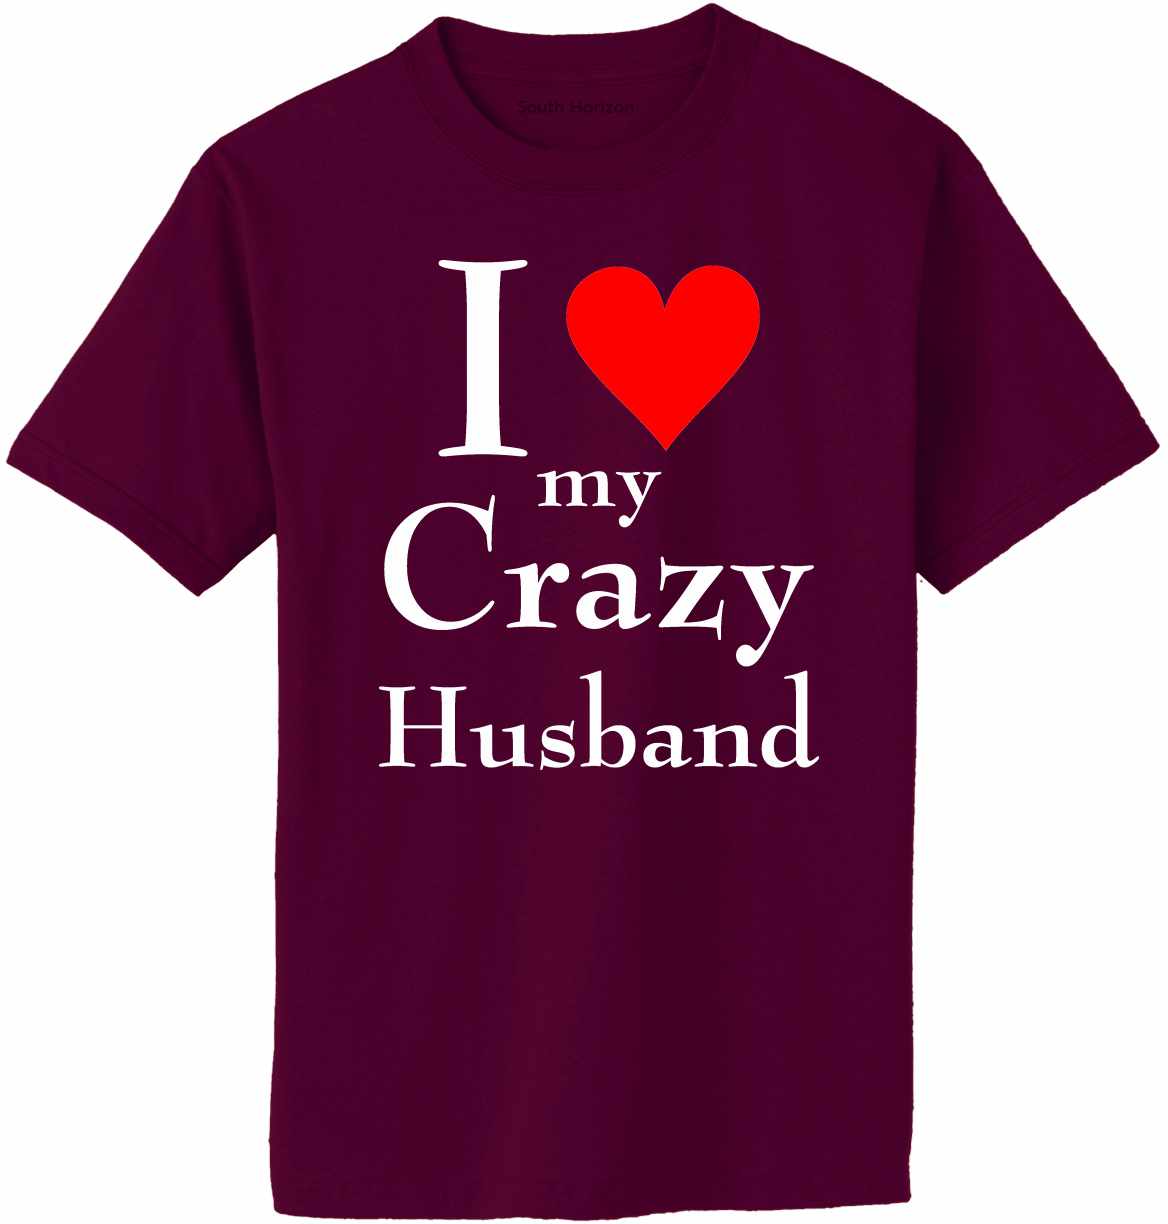 I LOVE MY CRAZY HUSBAND Adult T-Shirt (#1025-1)